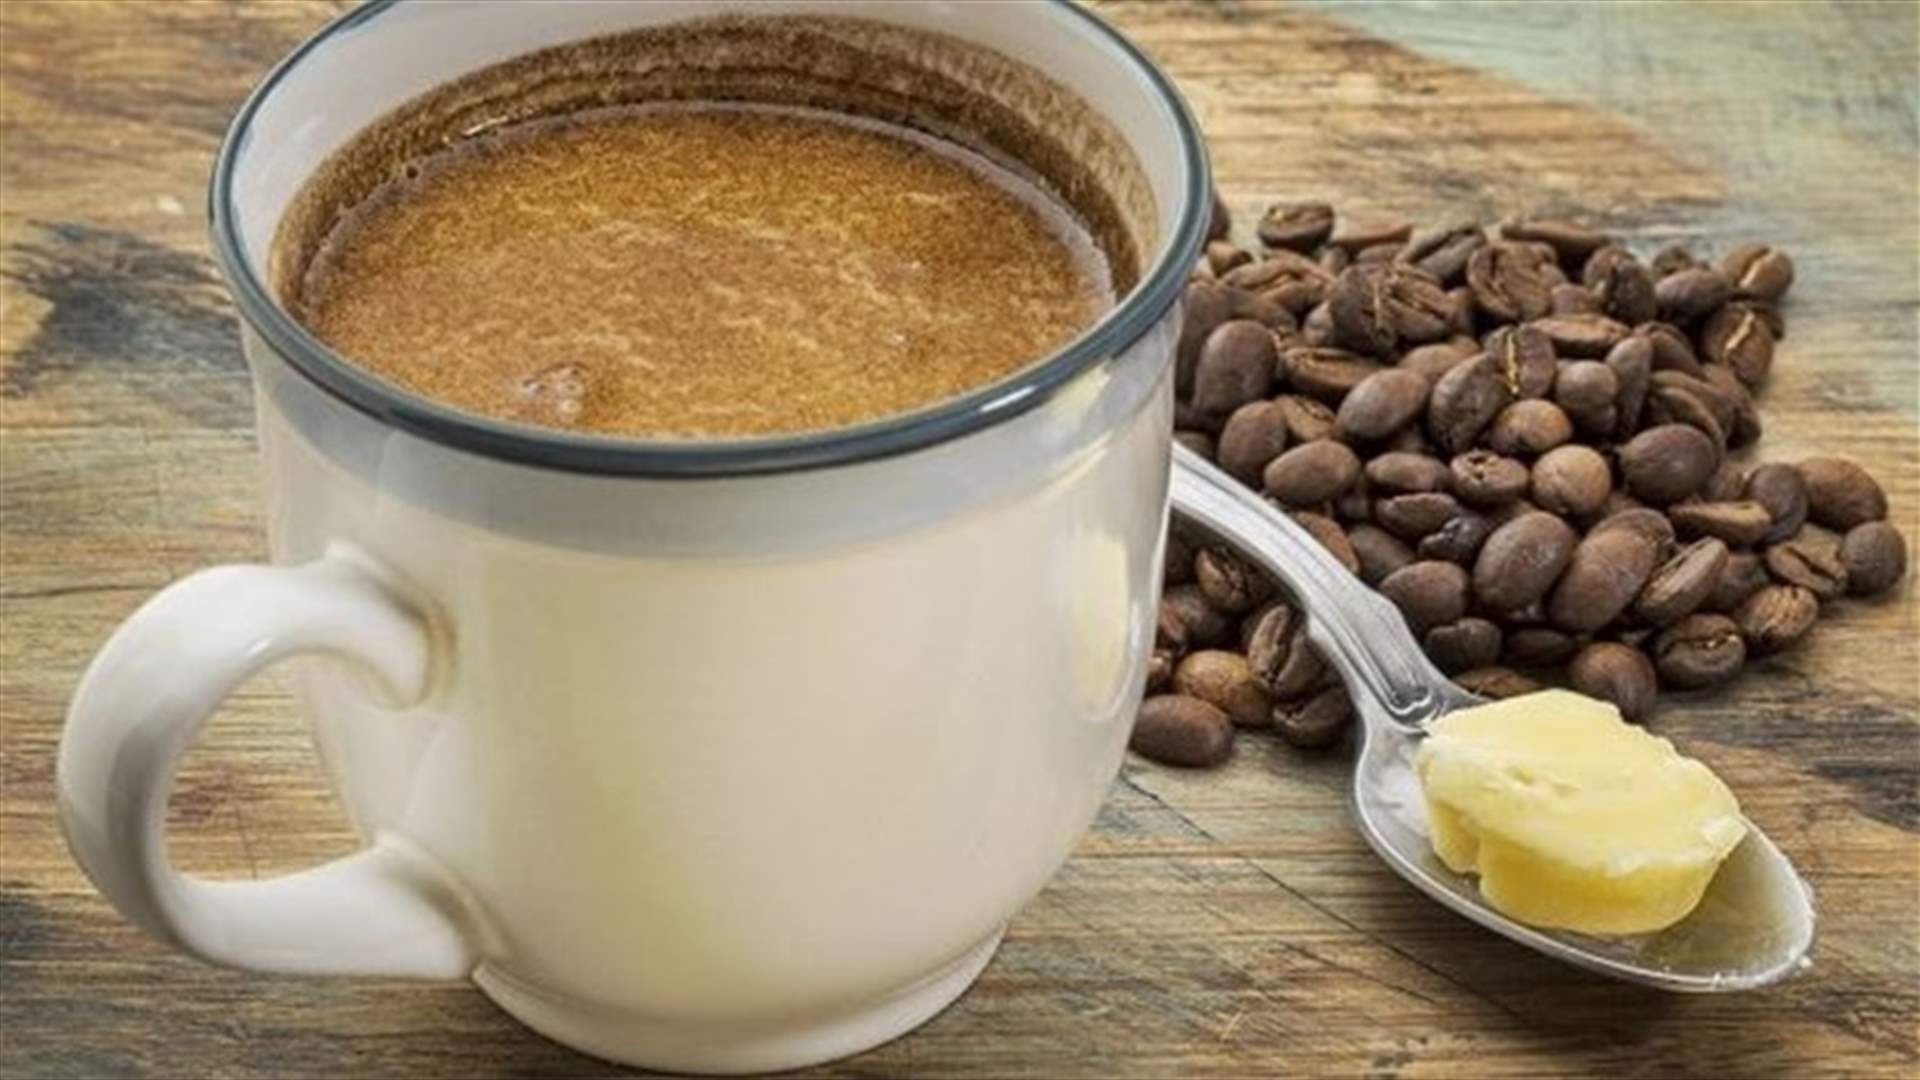 سرّ خسارة الوزن: قهوة مع الزبدة